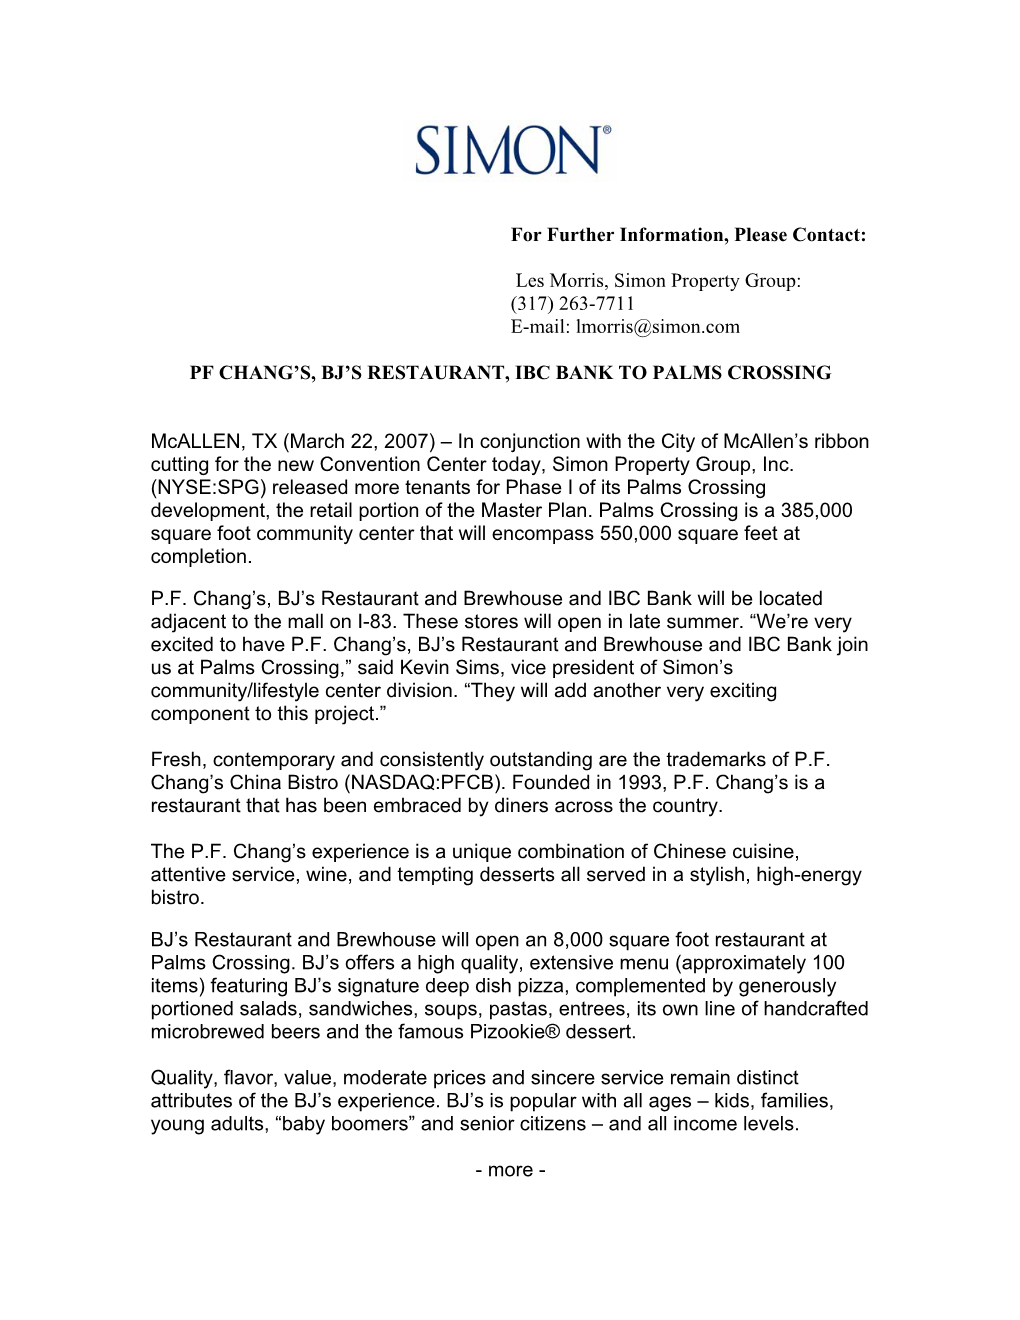 Les Morris, Simon Property Group: (317) 263-7711 E-Mail: Lmorris@Simon.Com